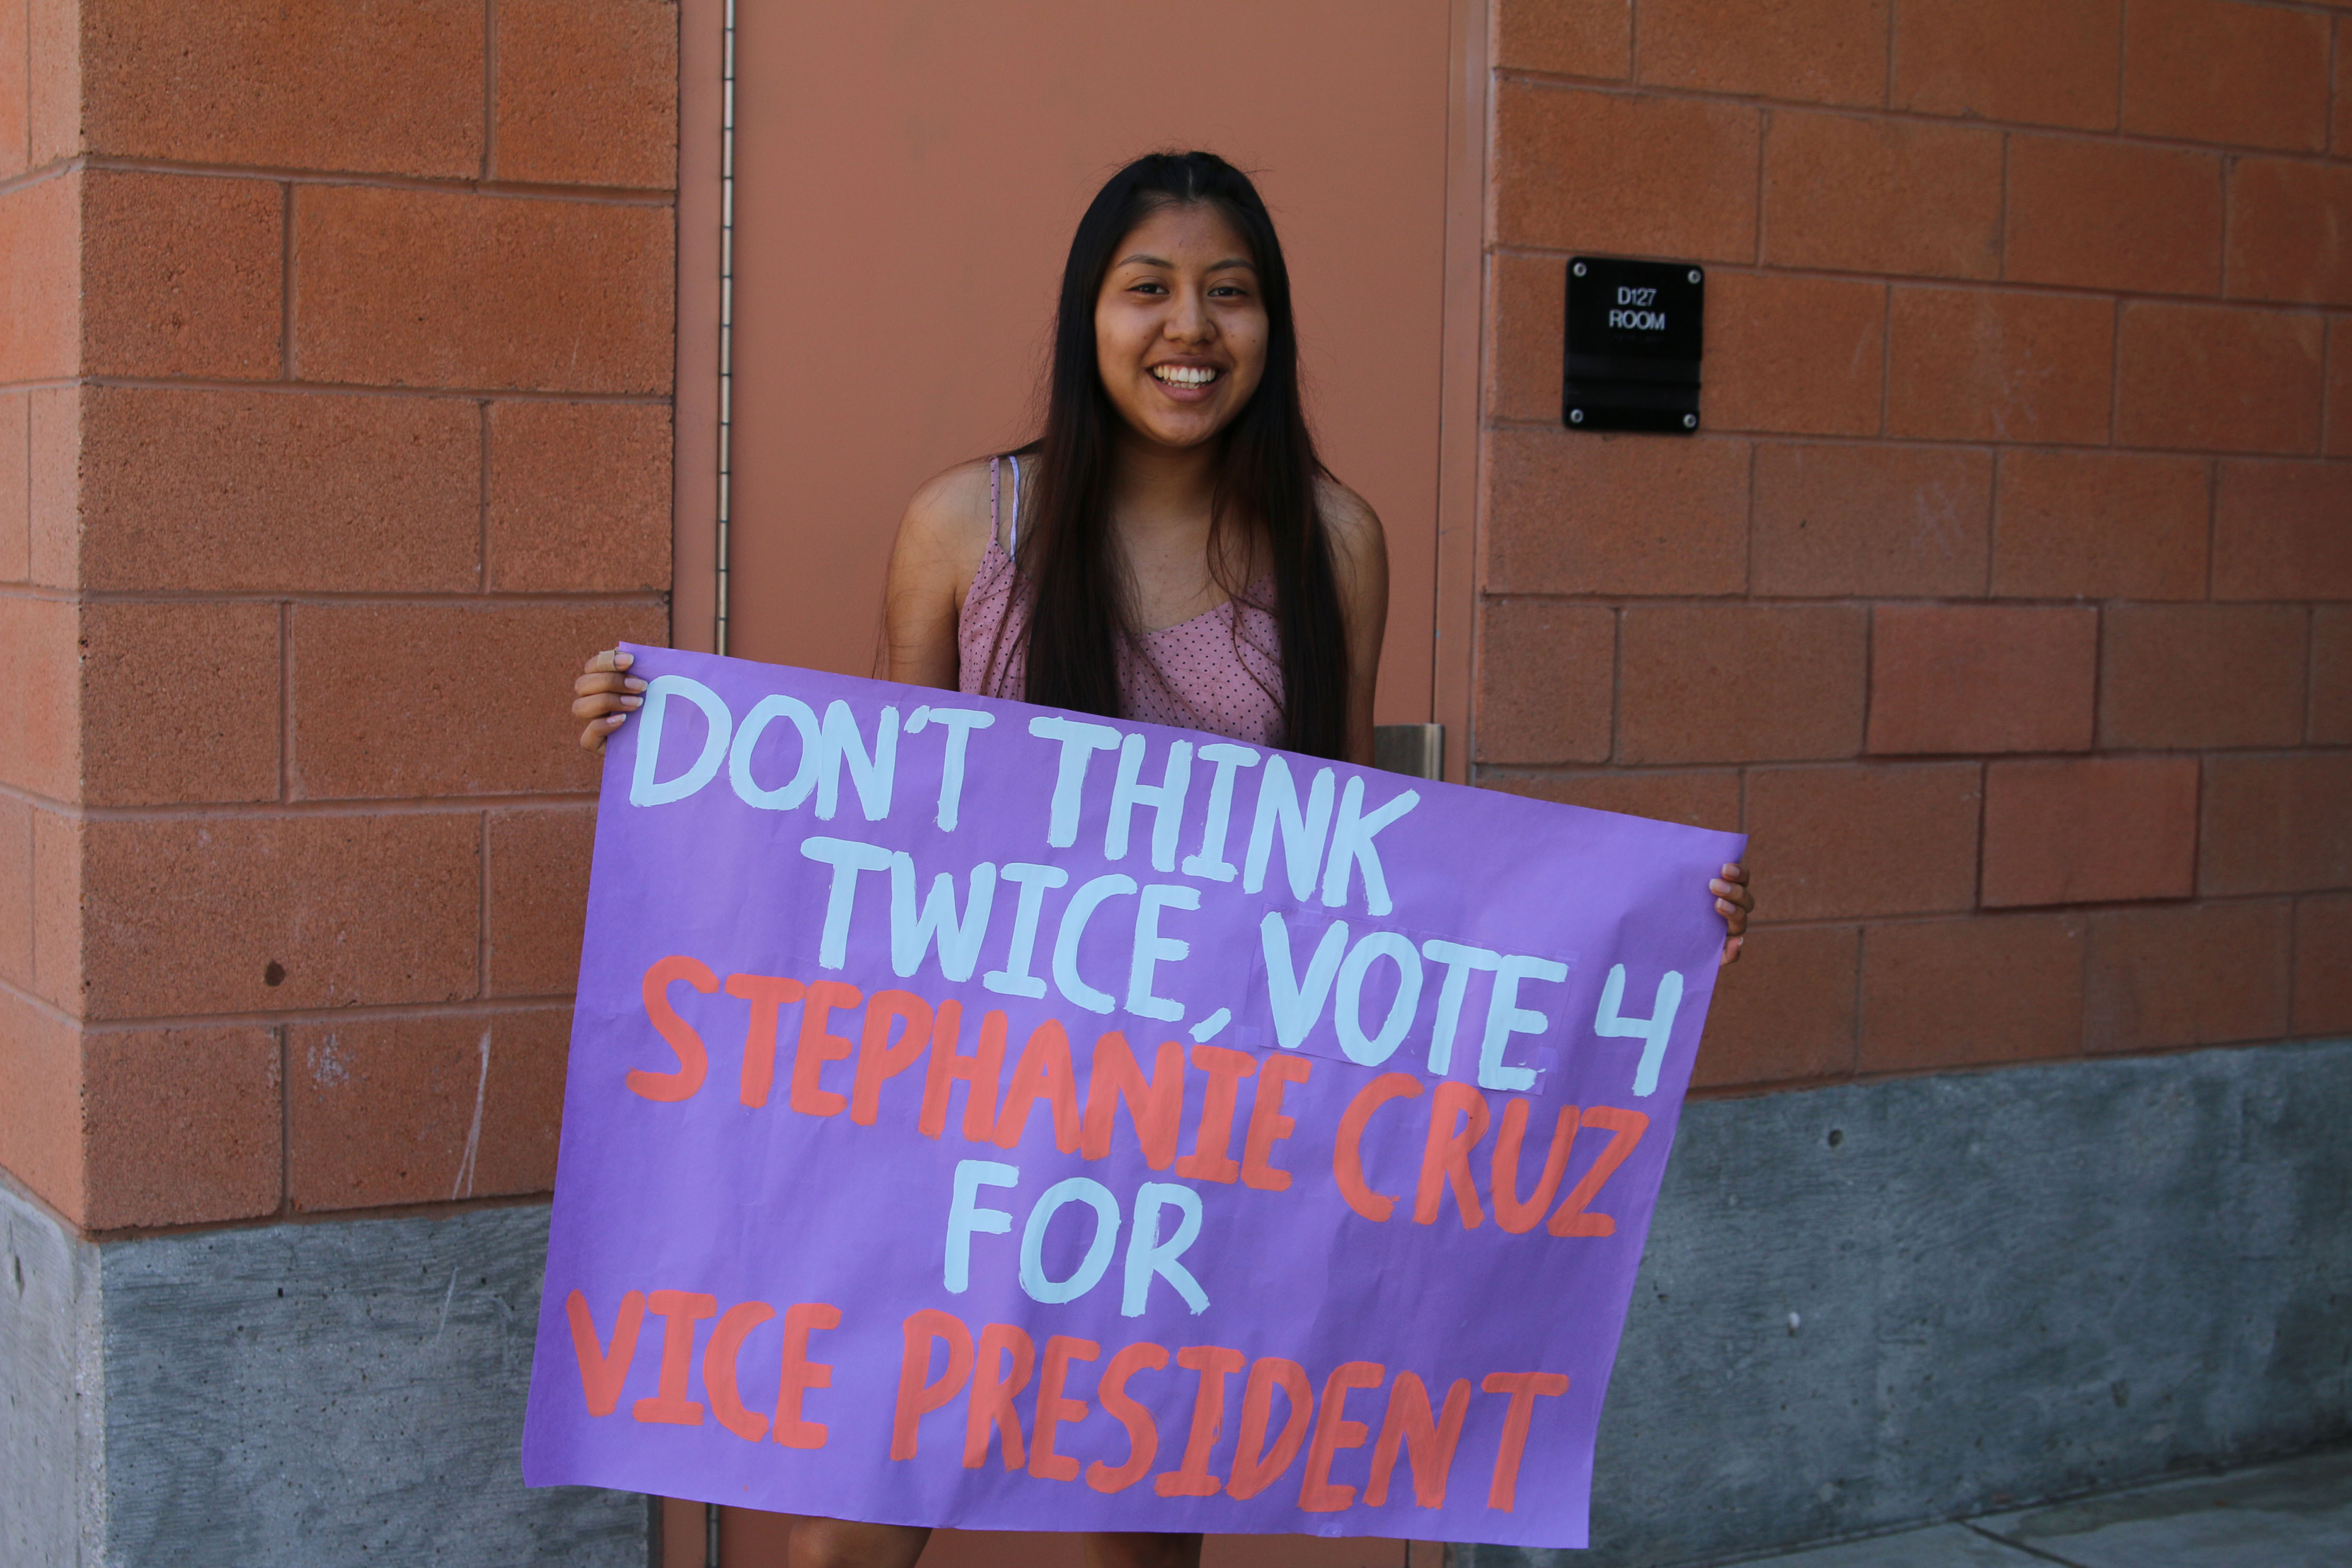 Stephanie Cruz for Vice President!